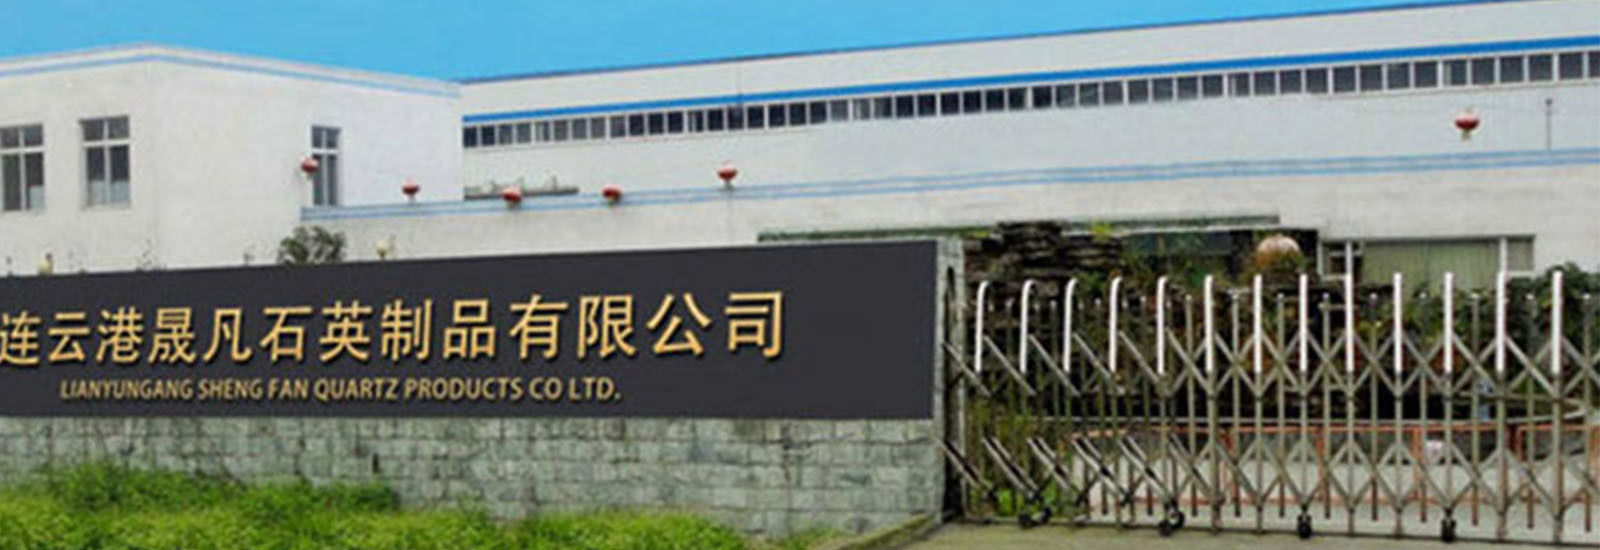 จีน Lianyungang Shengfan Quartz Product Co., Ltd รายละเอียด บริษัท